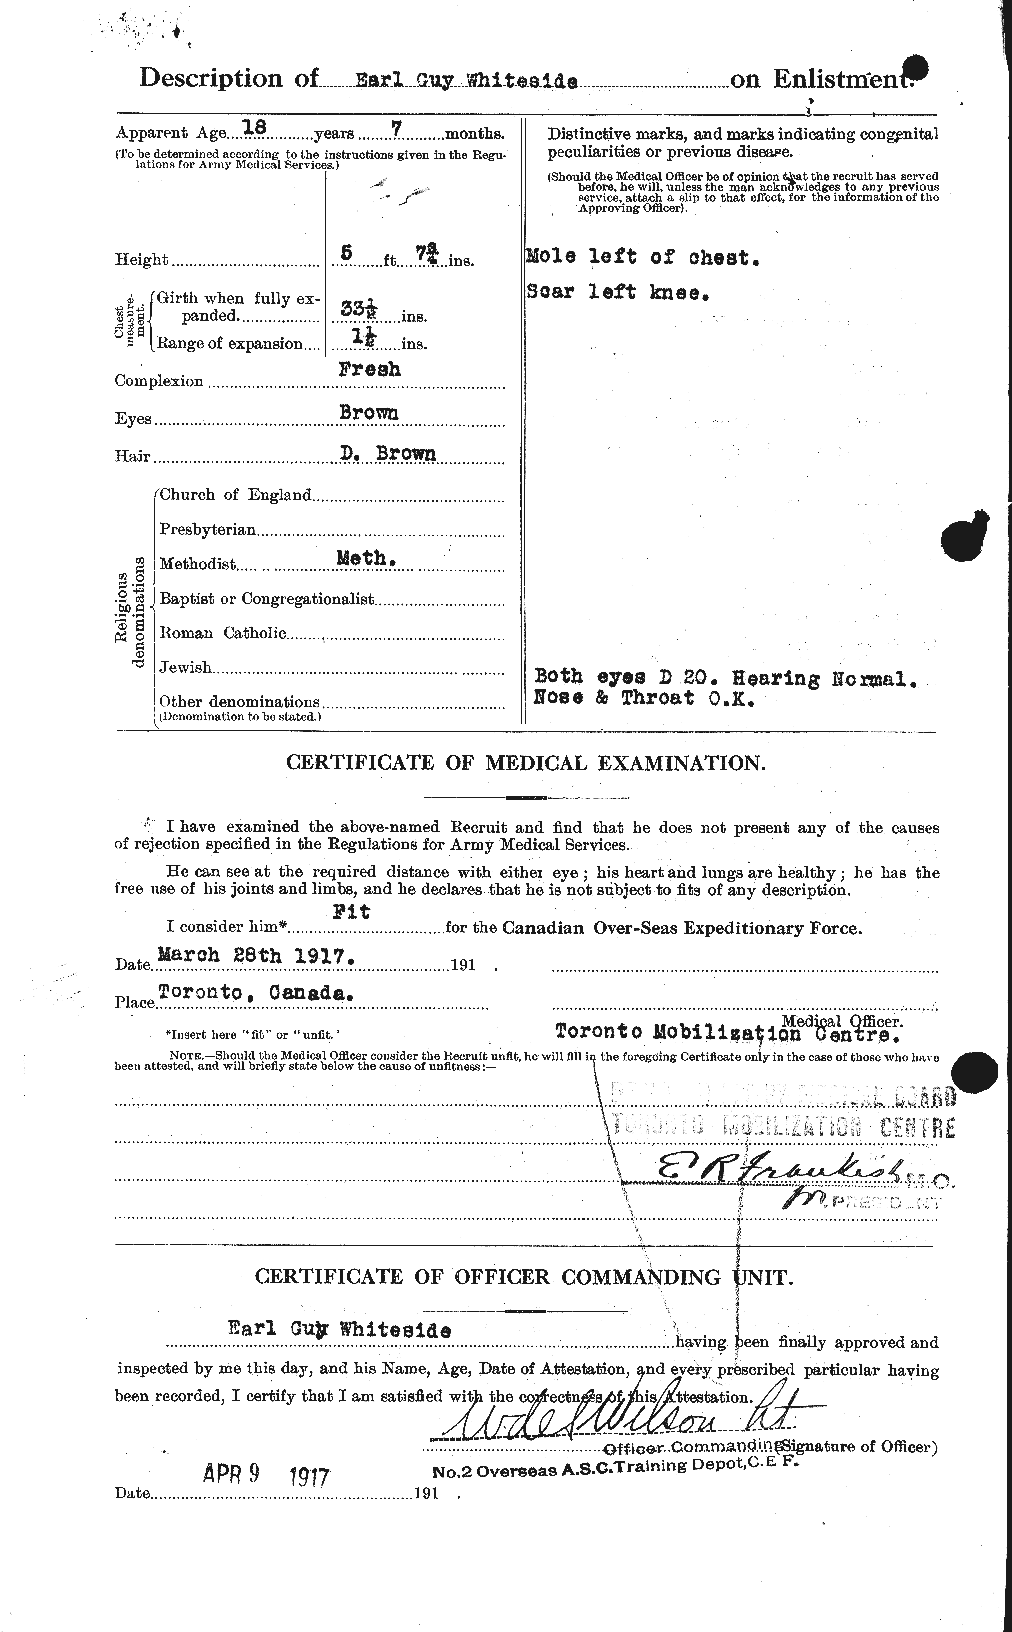 Dossiers du Personnel de la Première Guerre mondiale - CEC 671229b